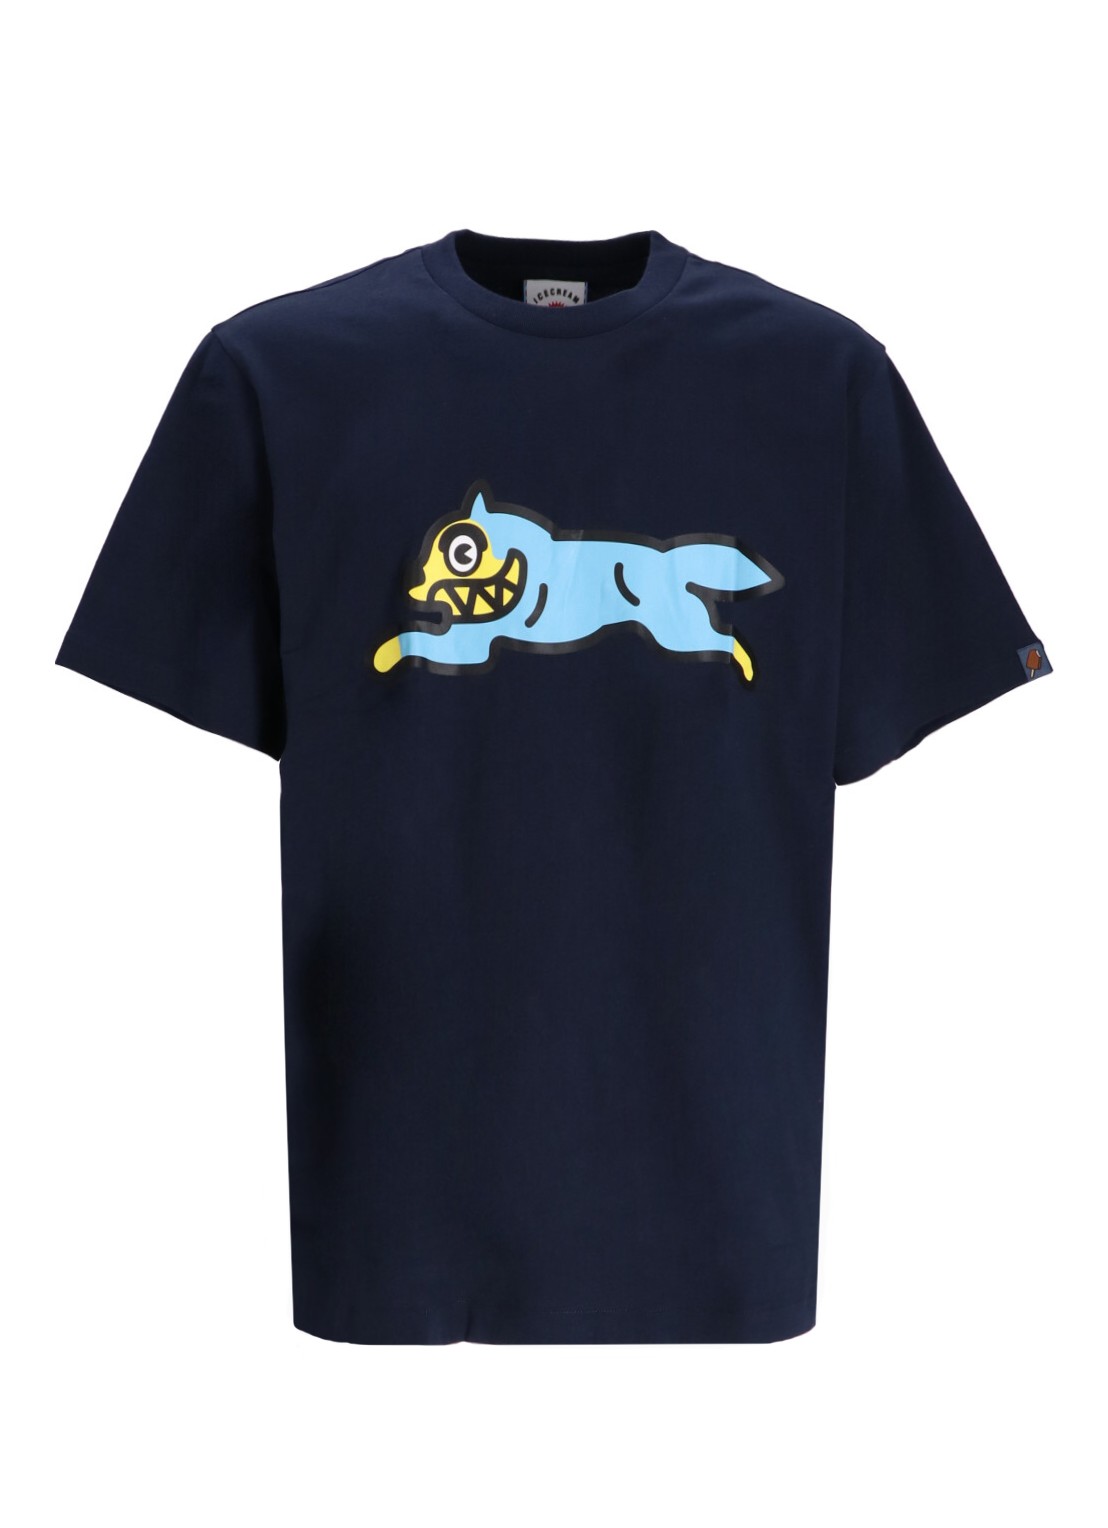 Camiseta icecream t-shirt manrunning dog t-shirt - ic24236 navy talla M
 